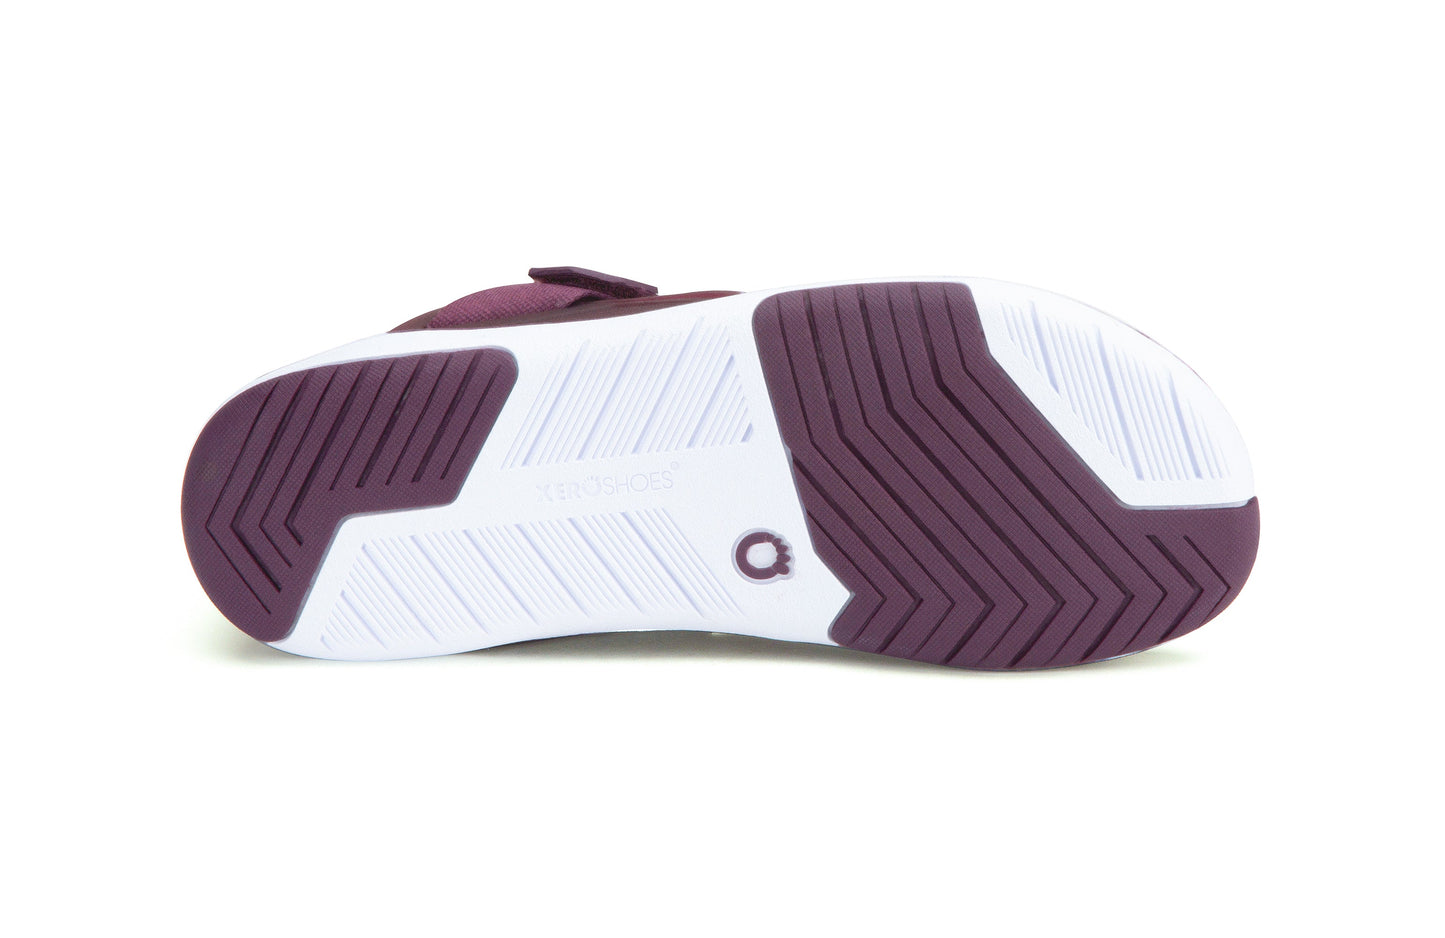 Xero Shoes Forza Trainer Womens barfods træningssko til kvinder i farven elderberry / fig,white / scuba blue, saal